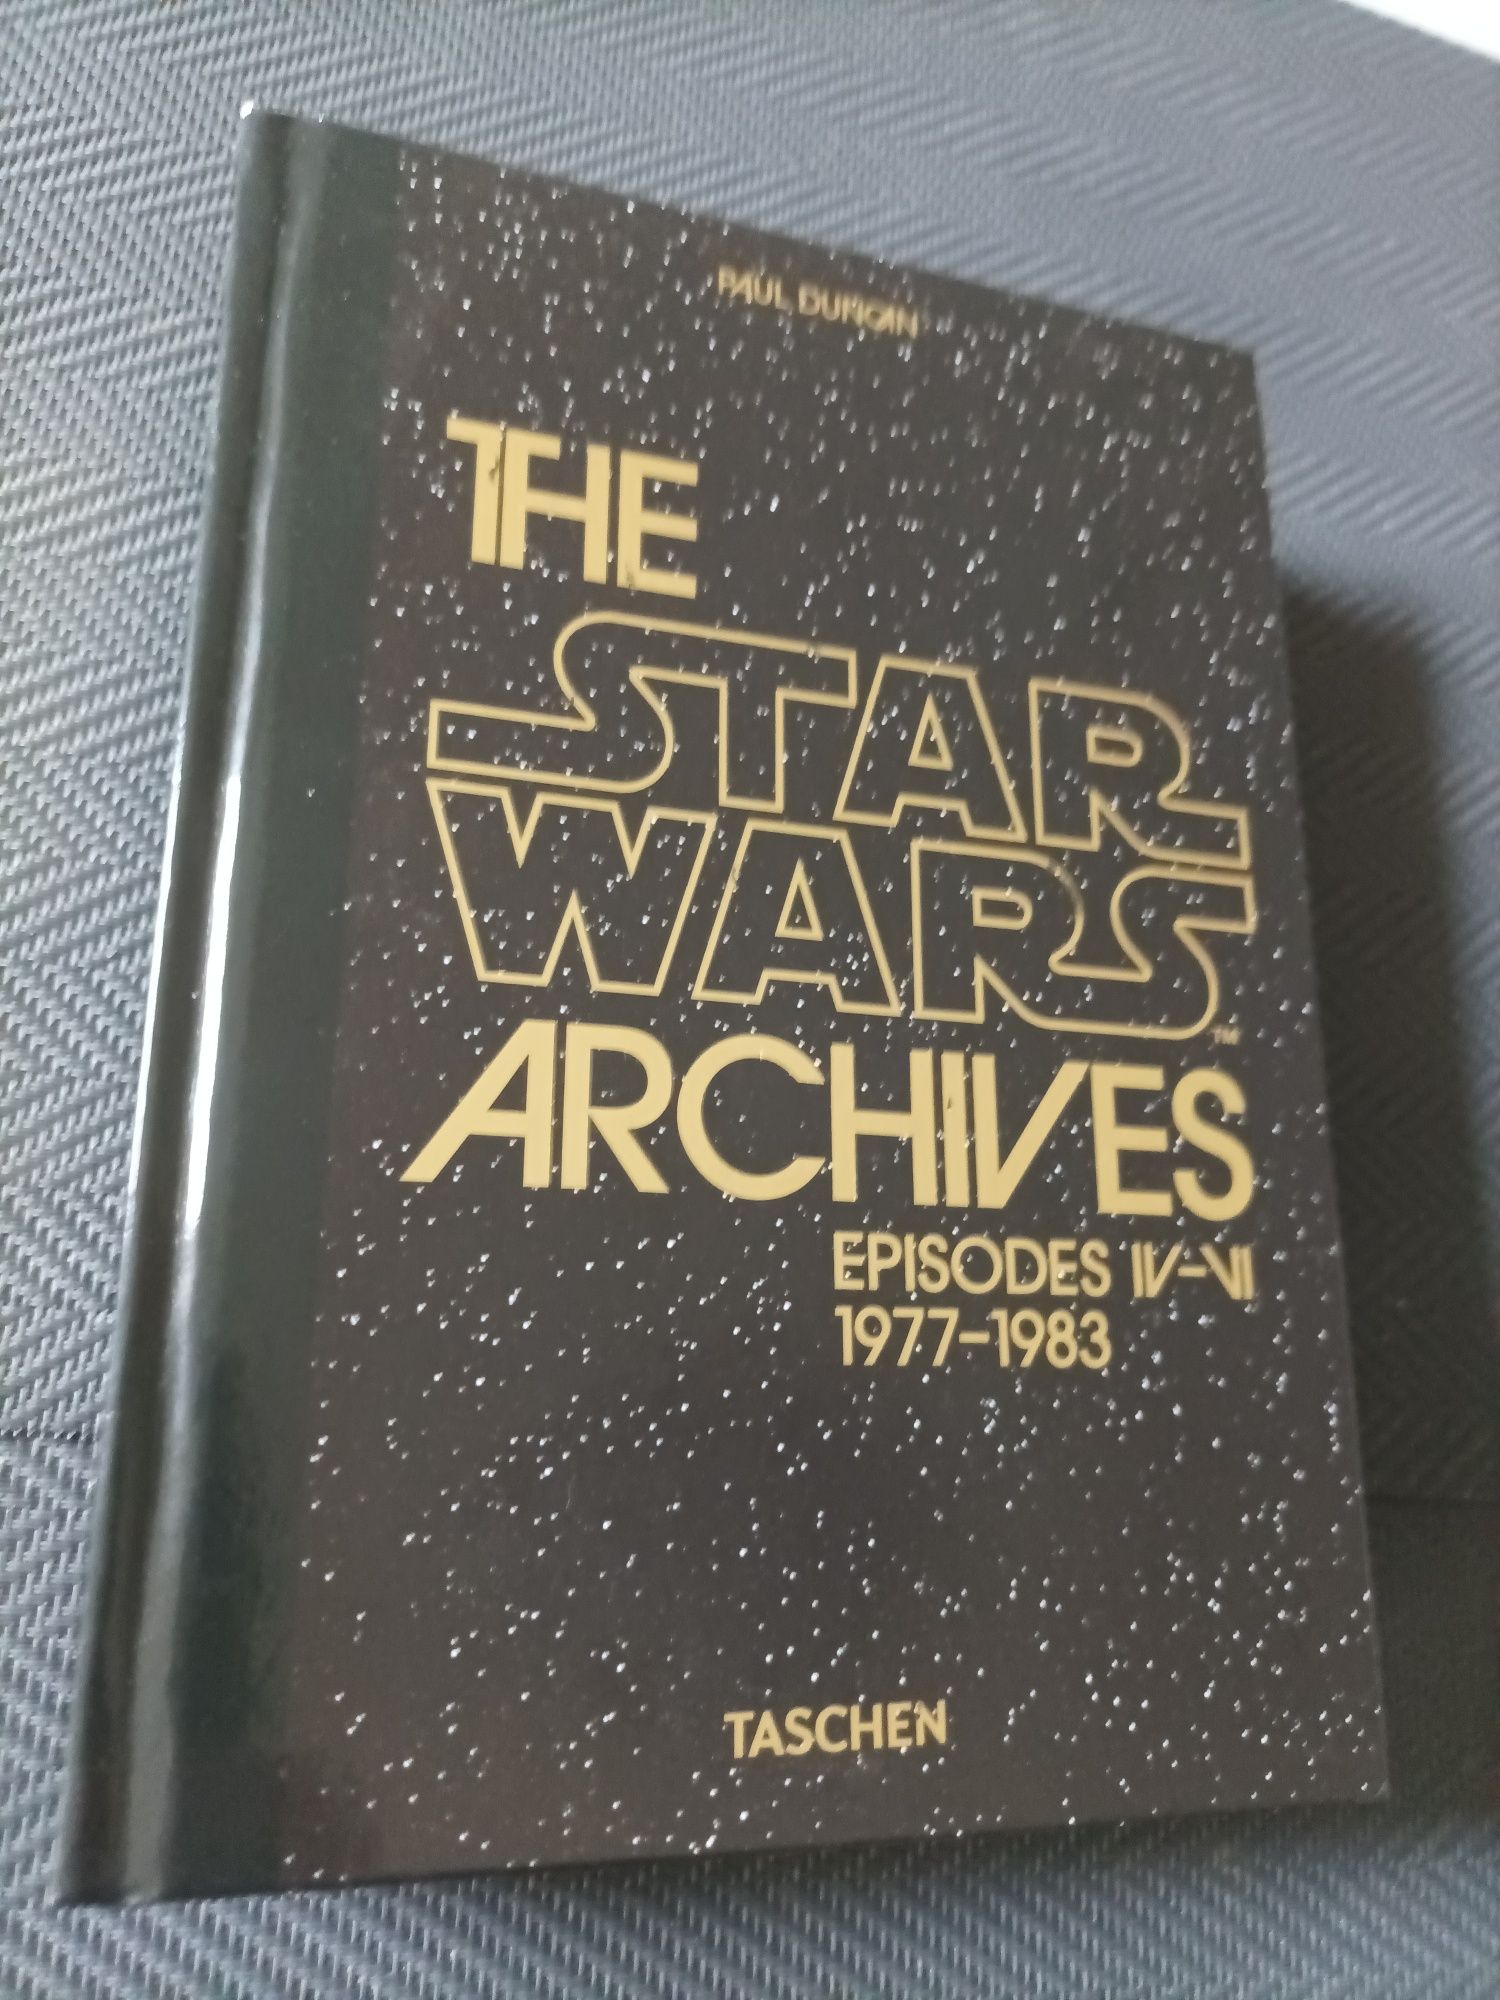 Vand carte Star Wars Archives, EPISODE IV-VI, 1977-1983